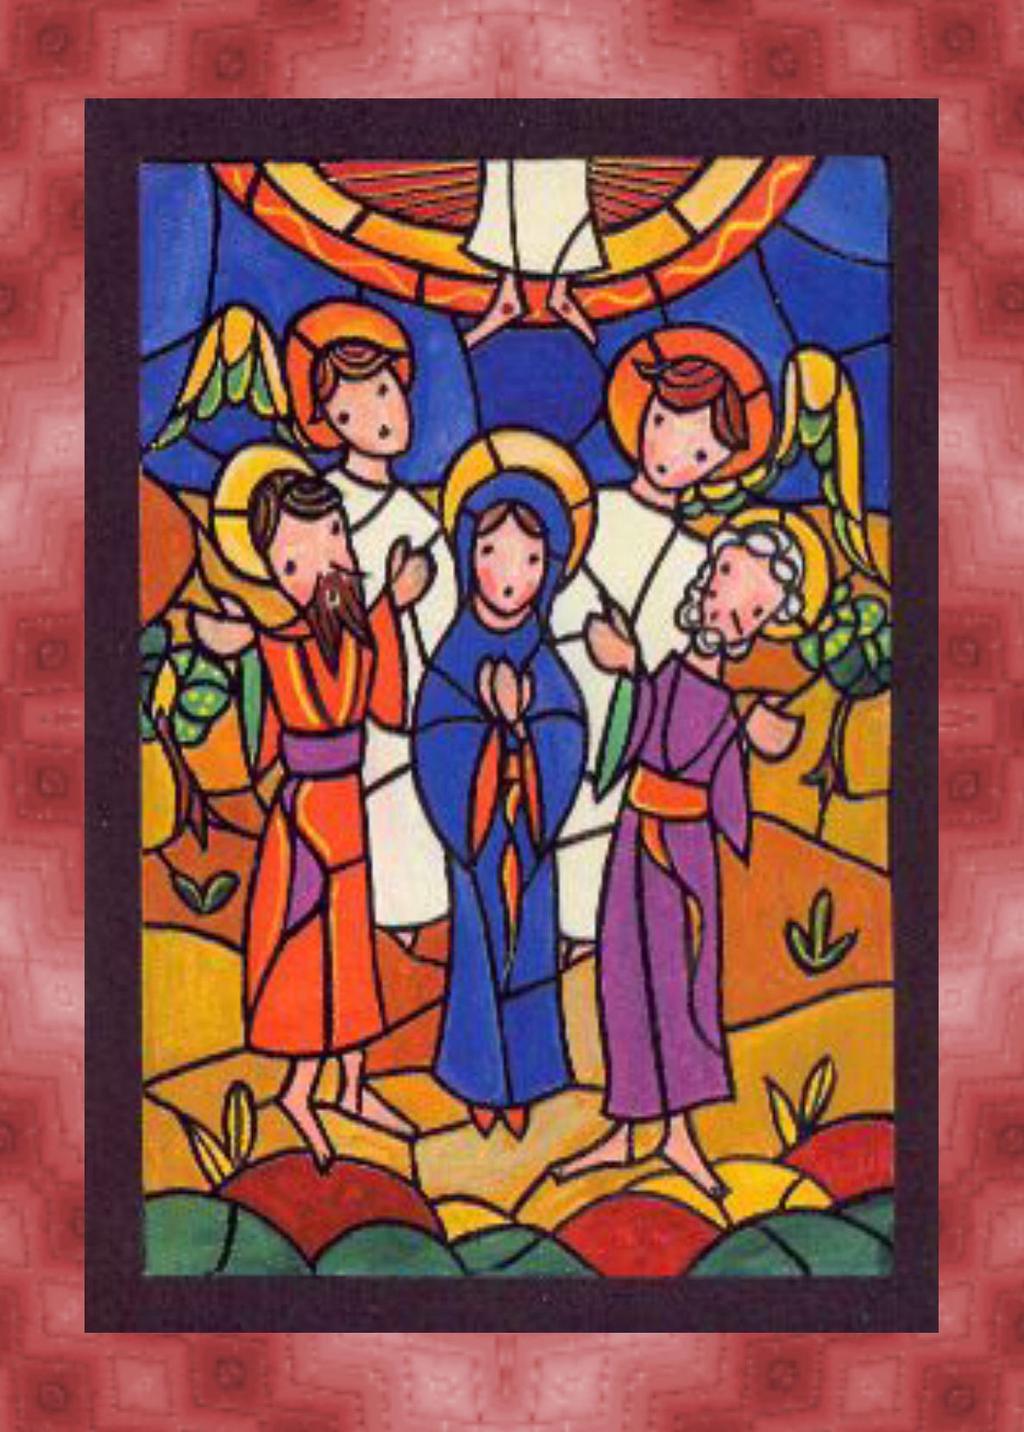 L'ascensione di Gesù al cielo Gesù condusse i discepoli fuori verso Betània e, alzate le mani, li benedisse.